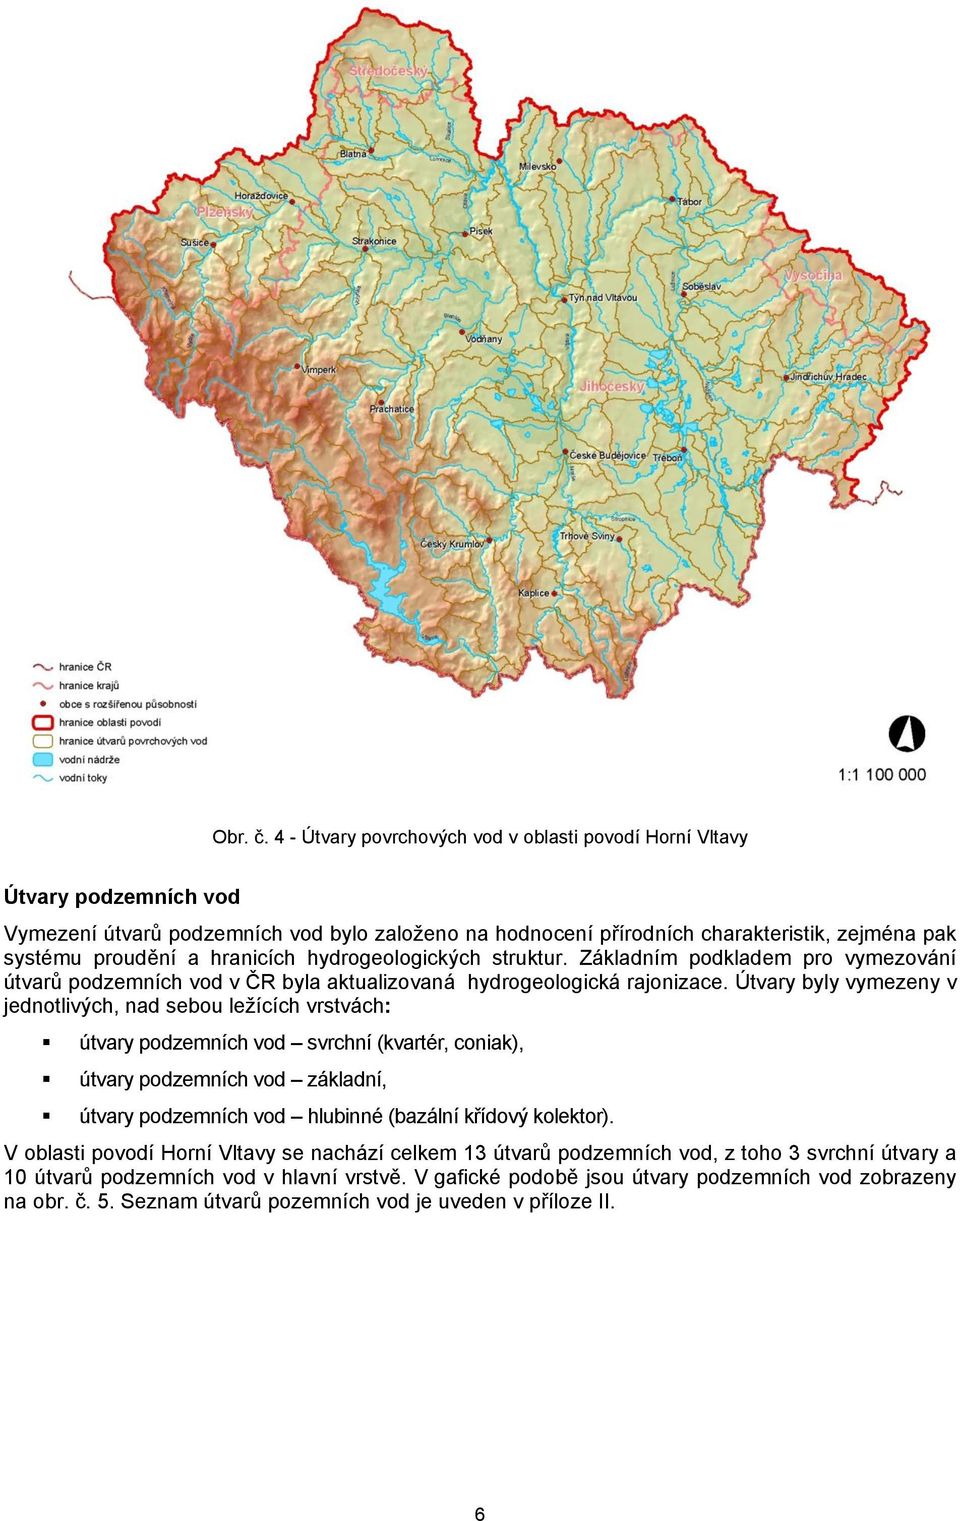 hranicích hydrogeologických struktur. Základním podkladem pro vymezování útvarů podzemních vod v ČR byla aktualizovaná hydrogeologická rajonizace.